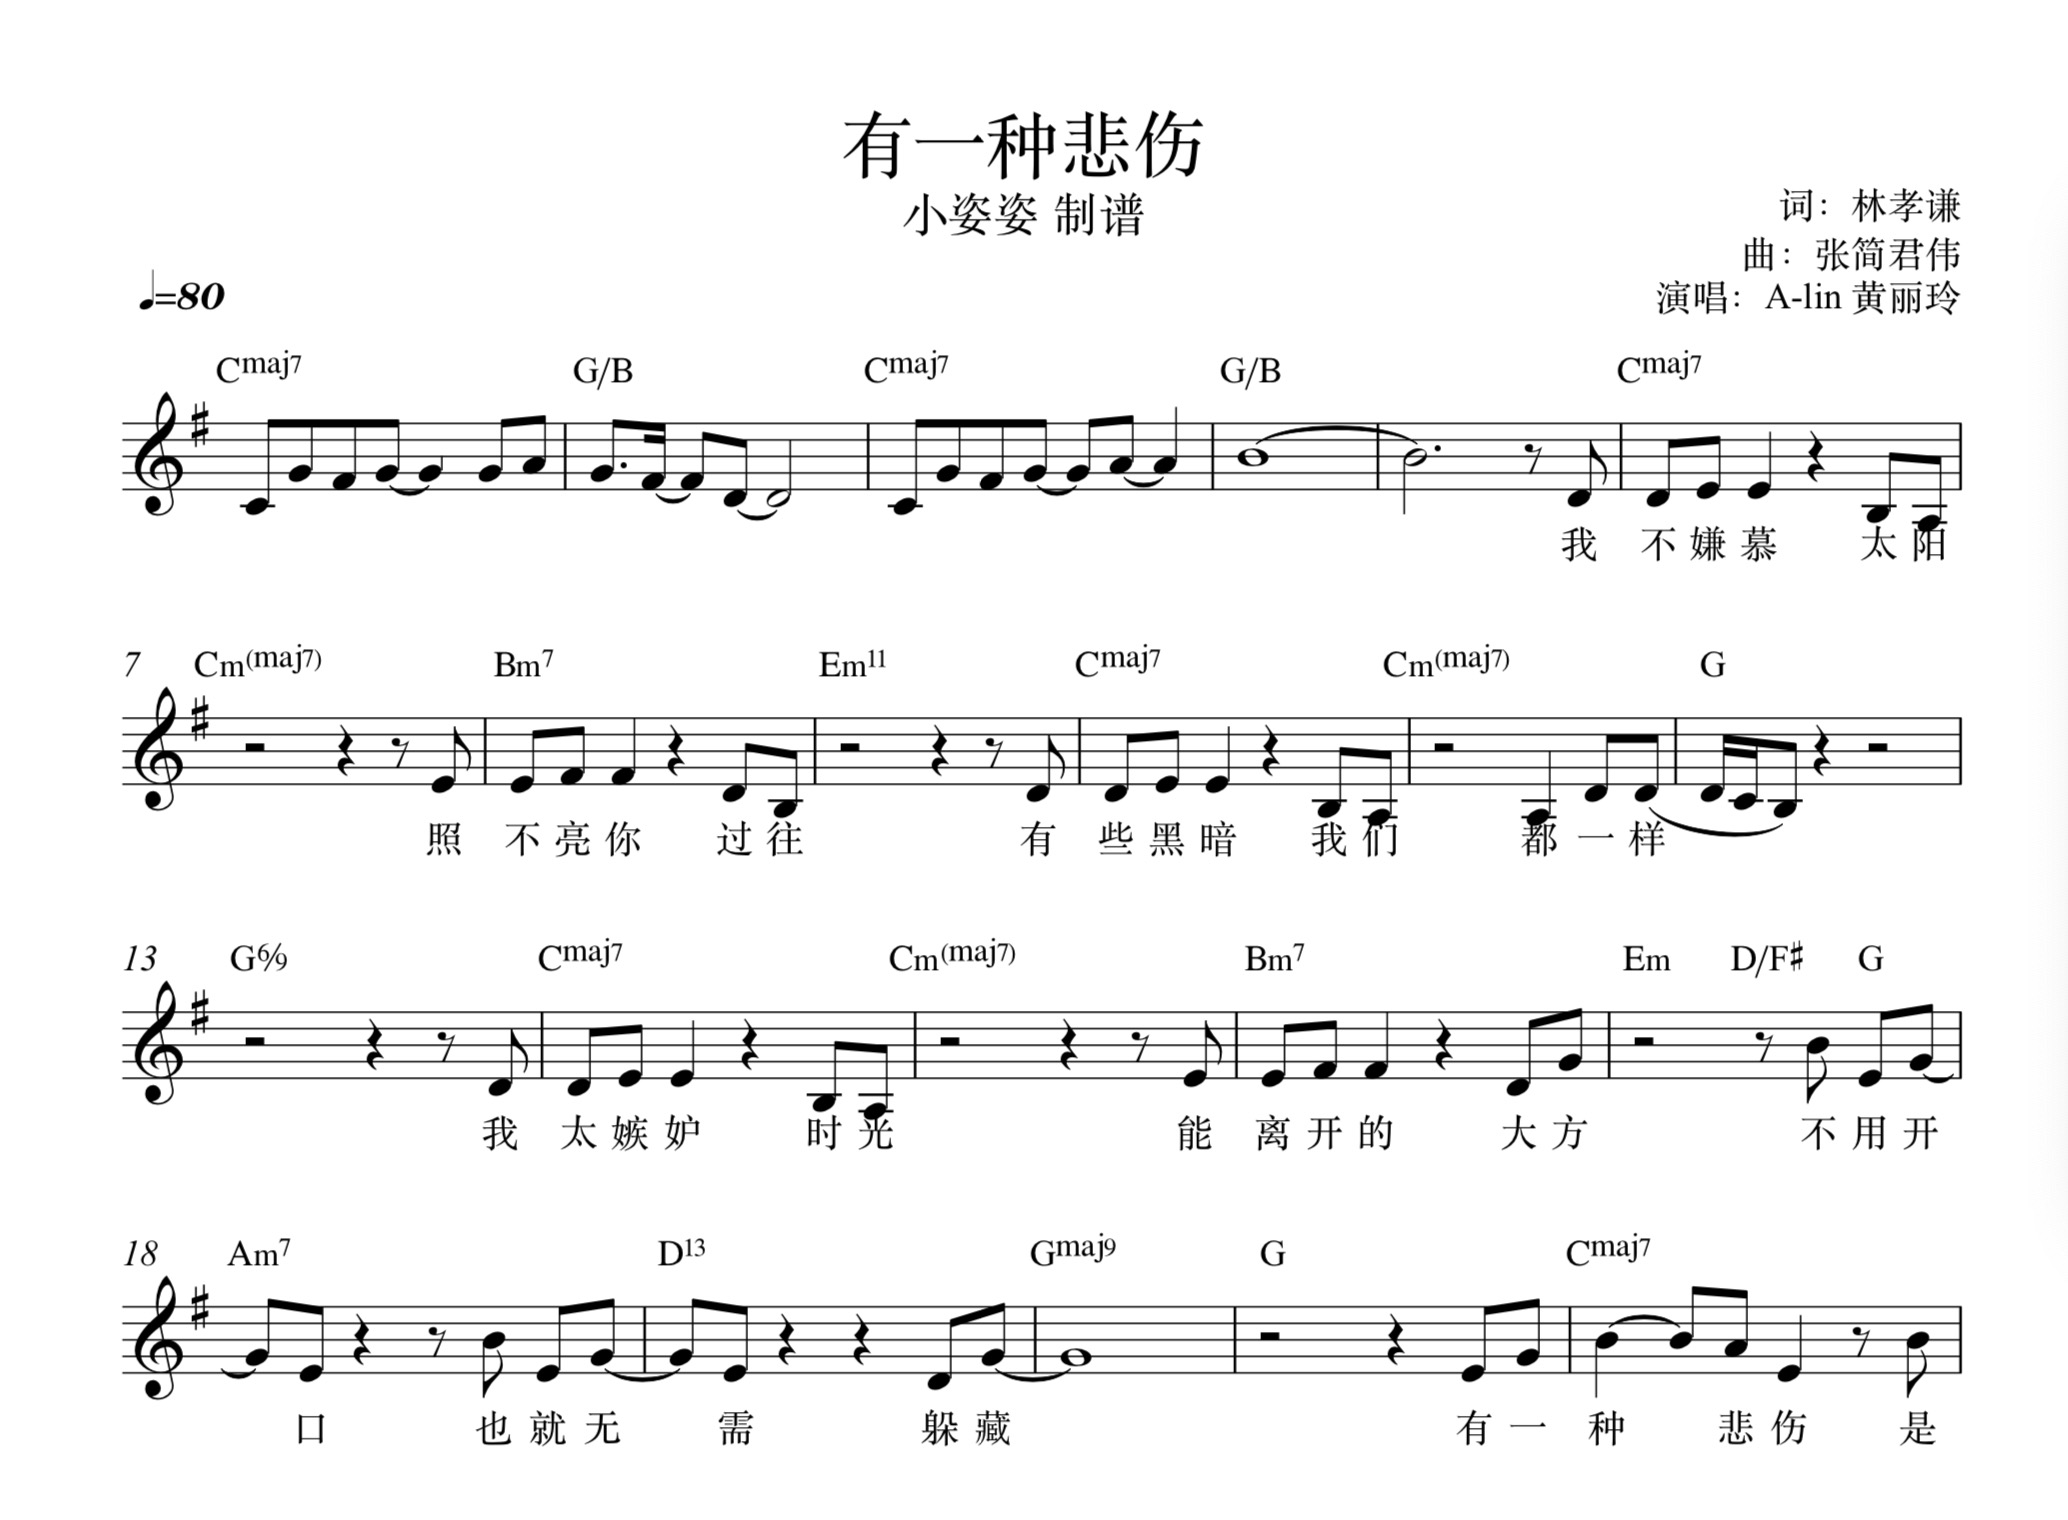 《有一种悲伤》alin 黄丽玲 钢琴谱 功能谱 流行歌曲定制订制